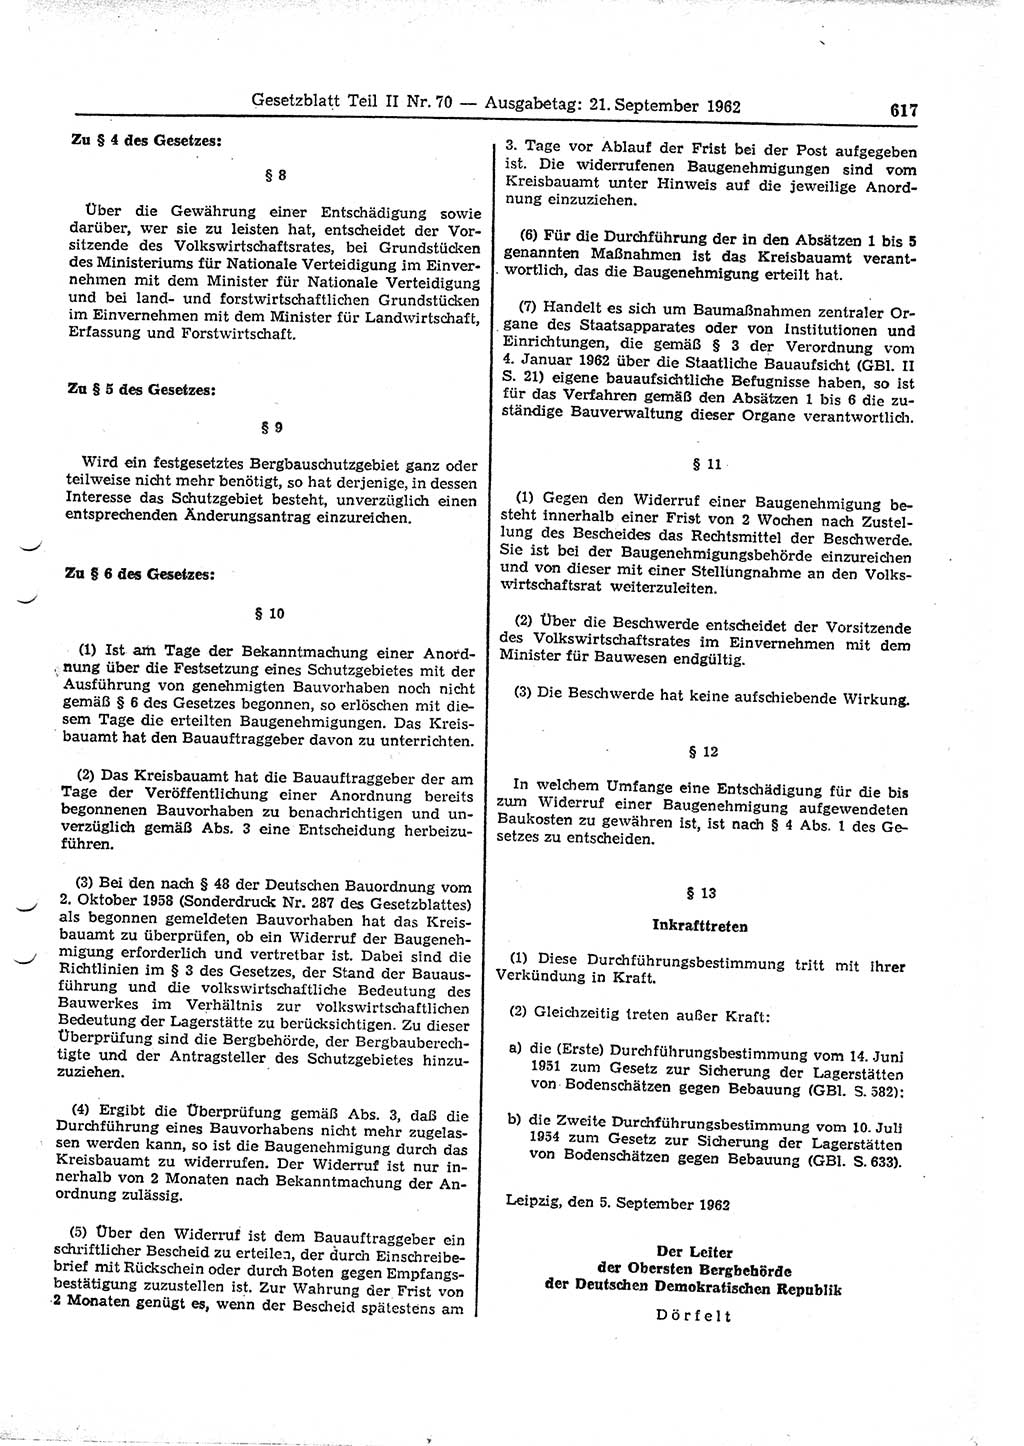 Gesetzblatt (GBl.) der Deutschen Demokratischen Republik (DDR) Teil ⅠⅠ 1962, Seite 617 (GBl. DDR ⅠⅠ 1962, S. 617)